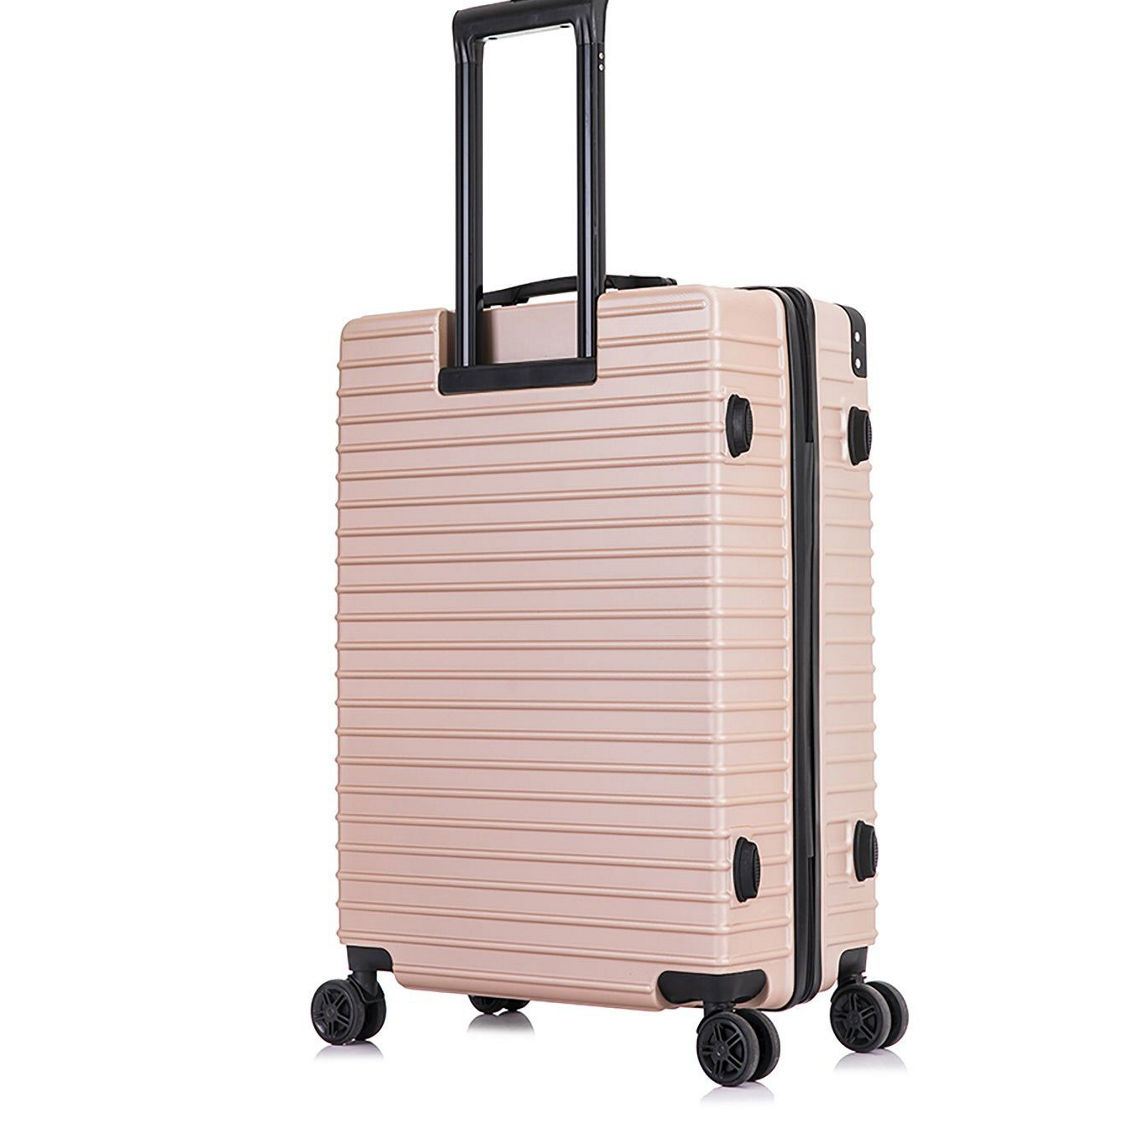 DUKAP  Tour lightweight Hardside luggage Large 28” - Image 5 of 5